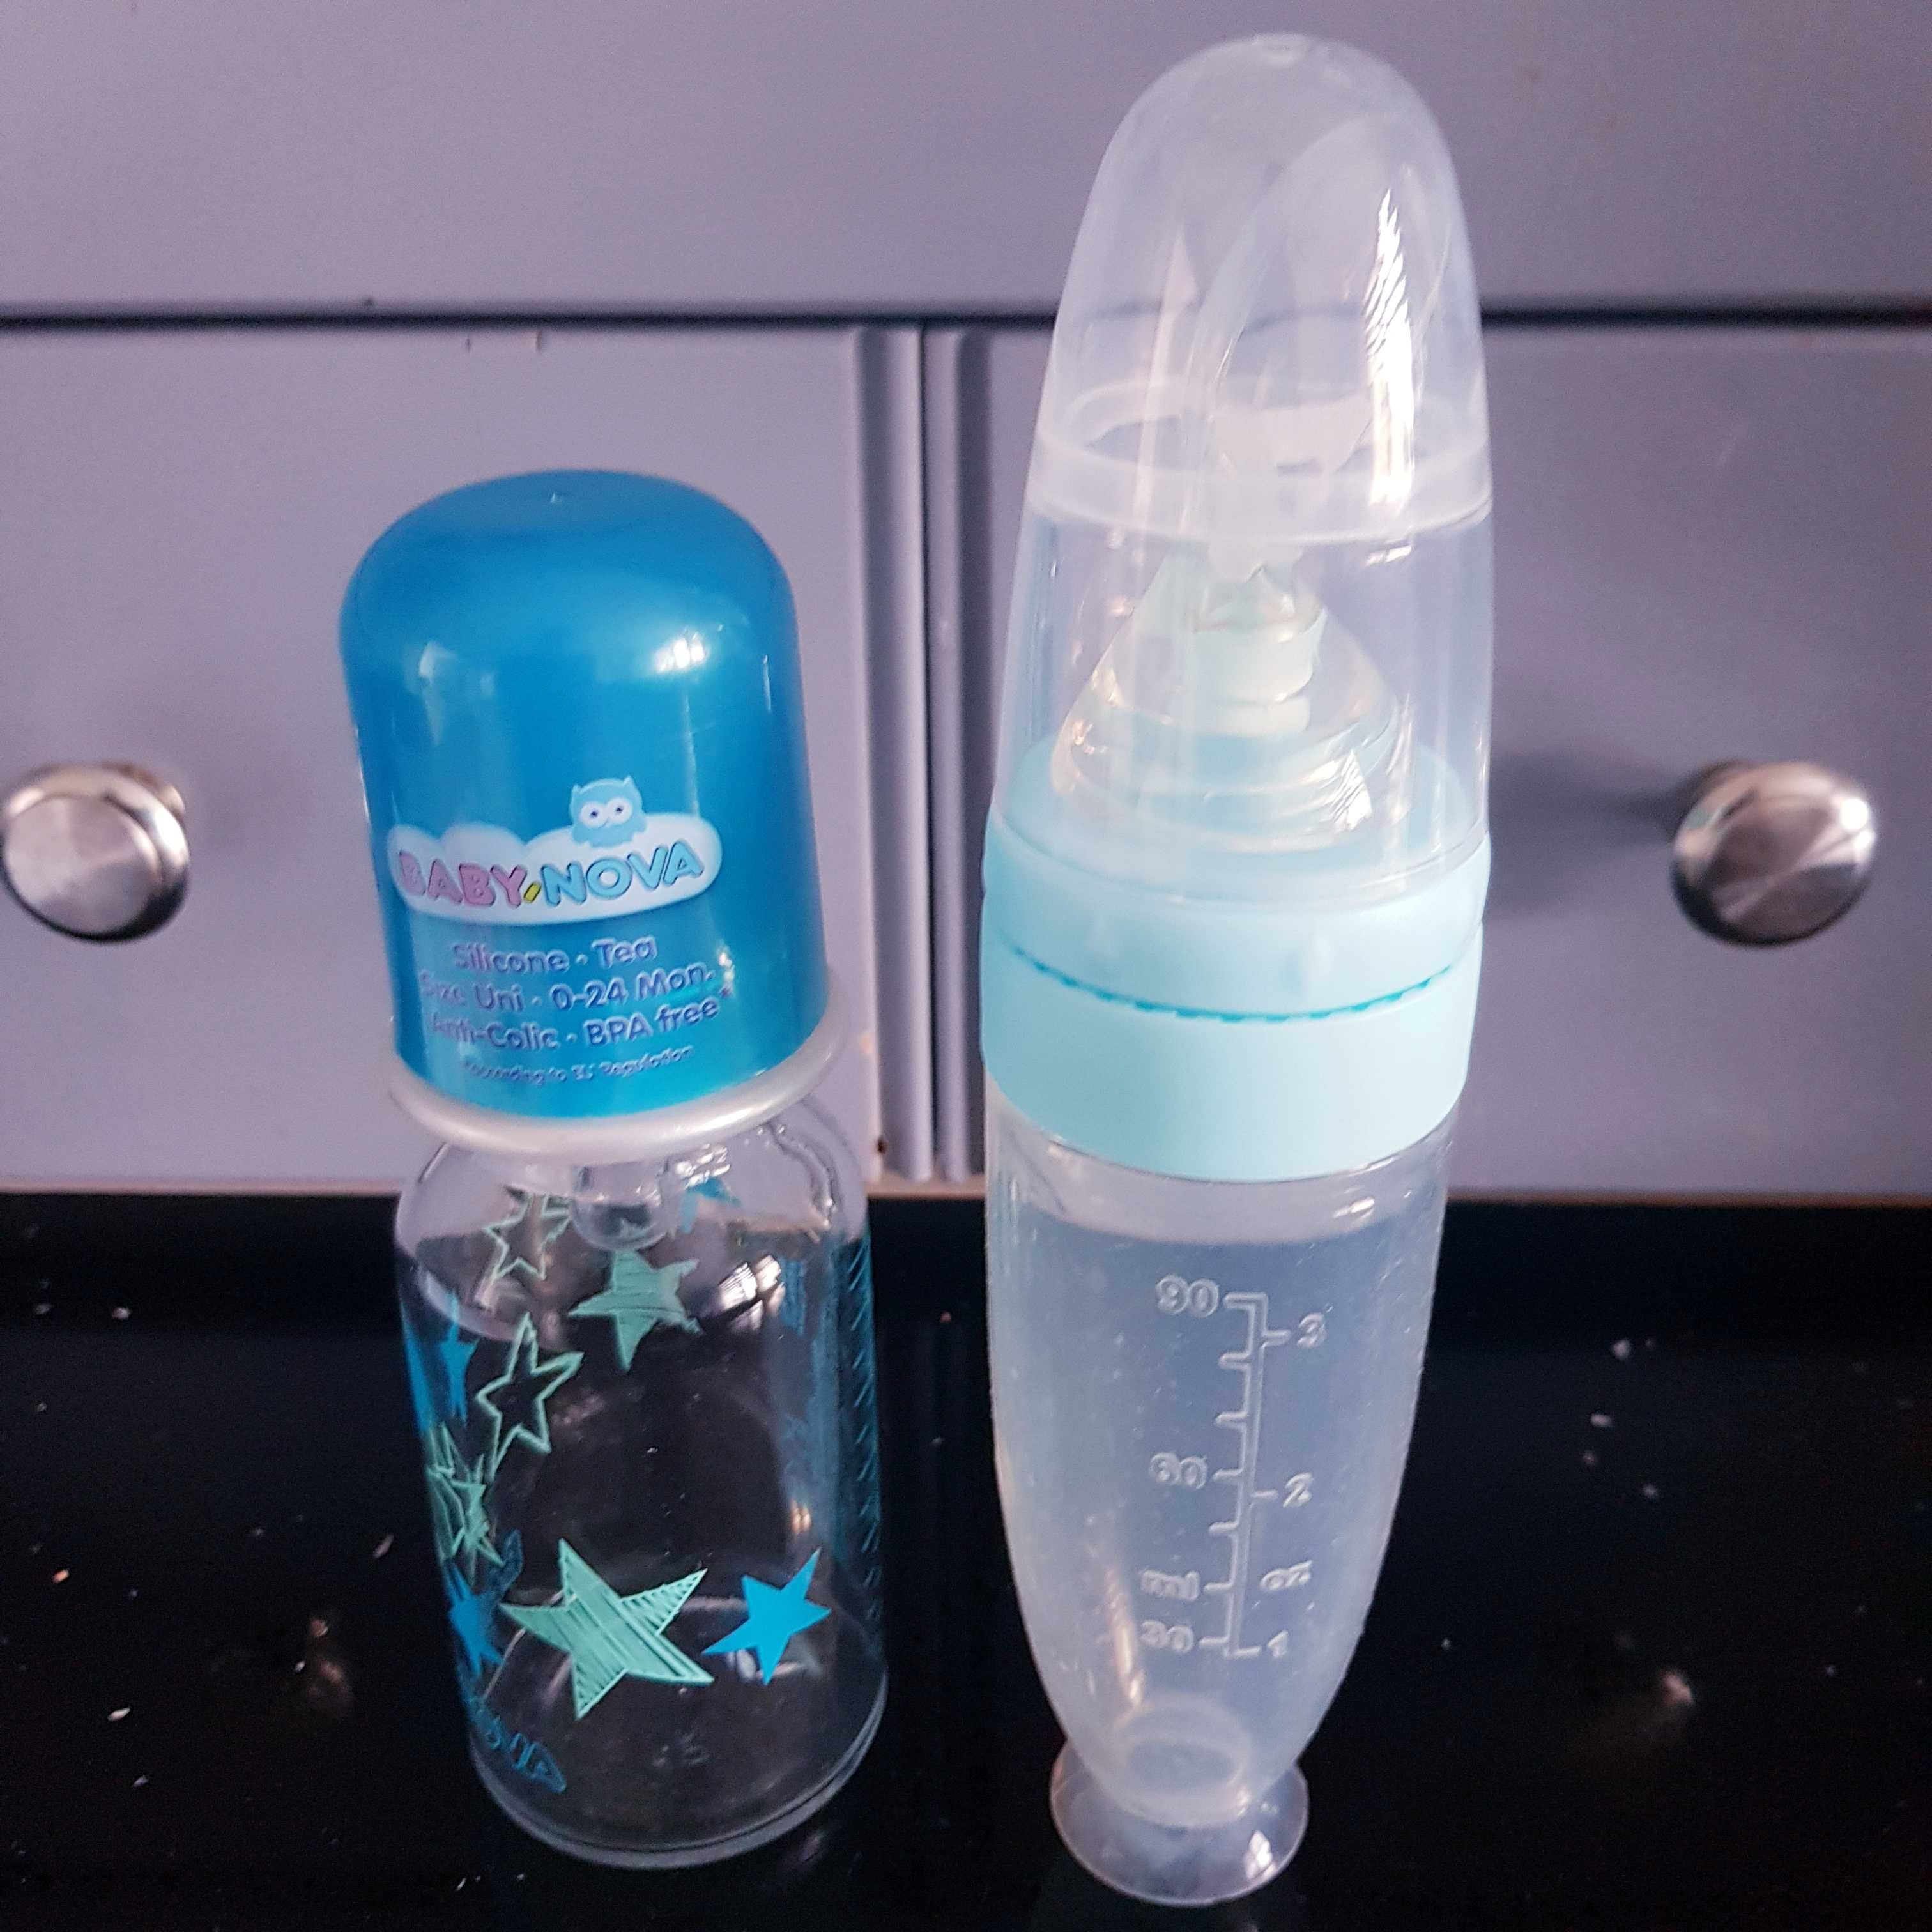 Lingurița din silicon cu rezervor si sticla pentru bebe